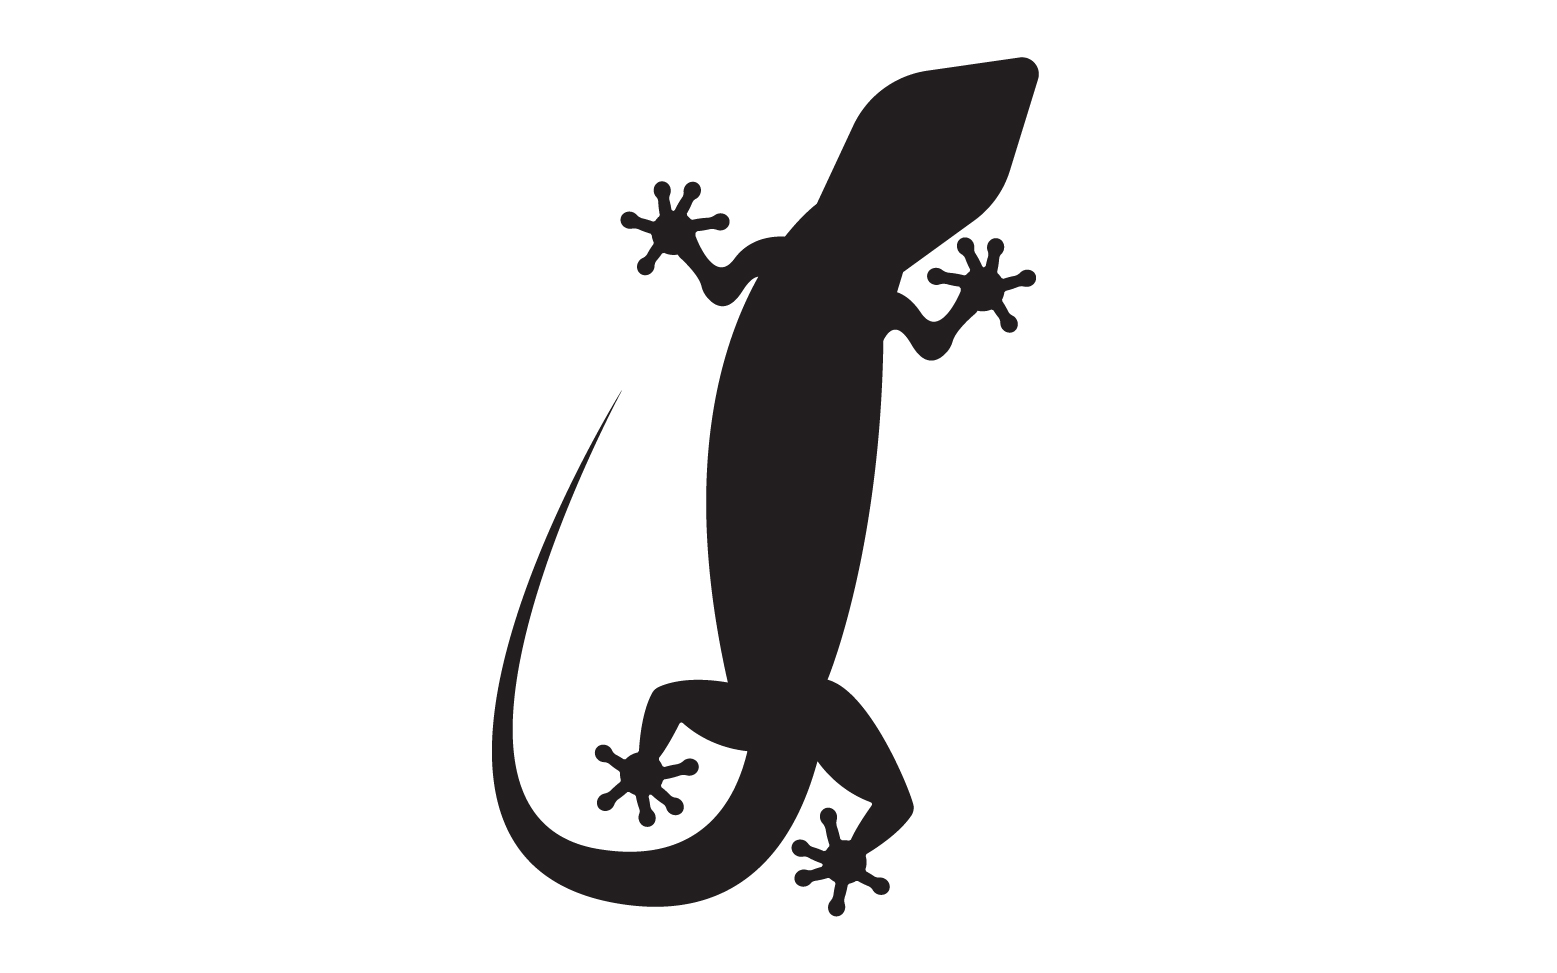 Lizard chameleon home lizard logo v34